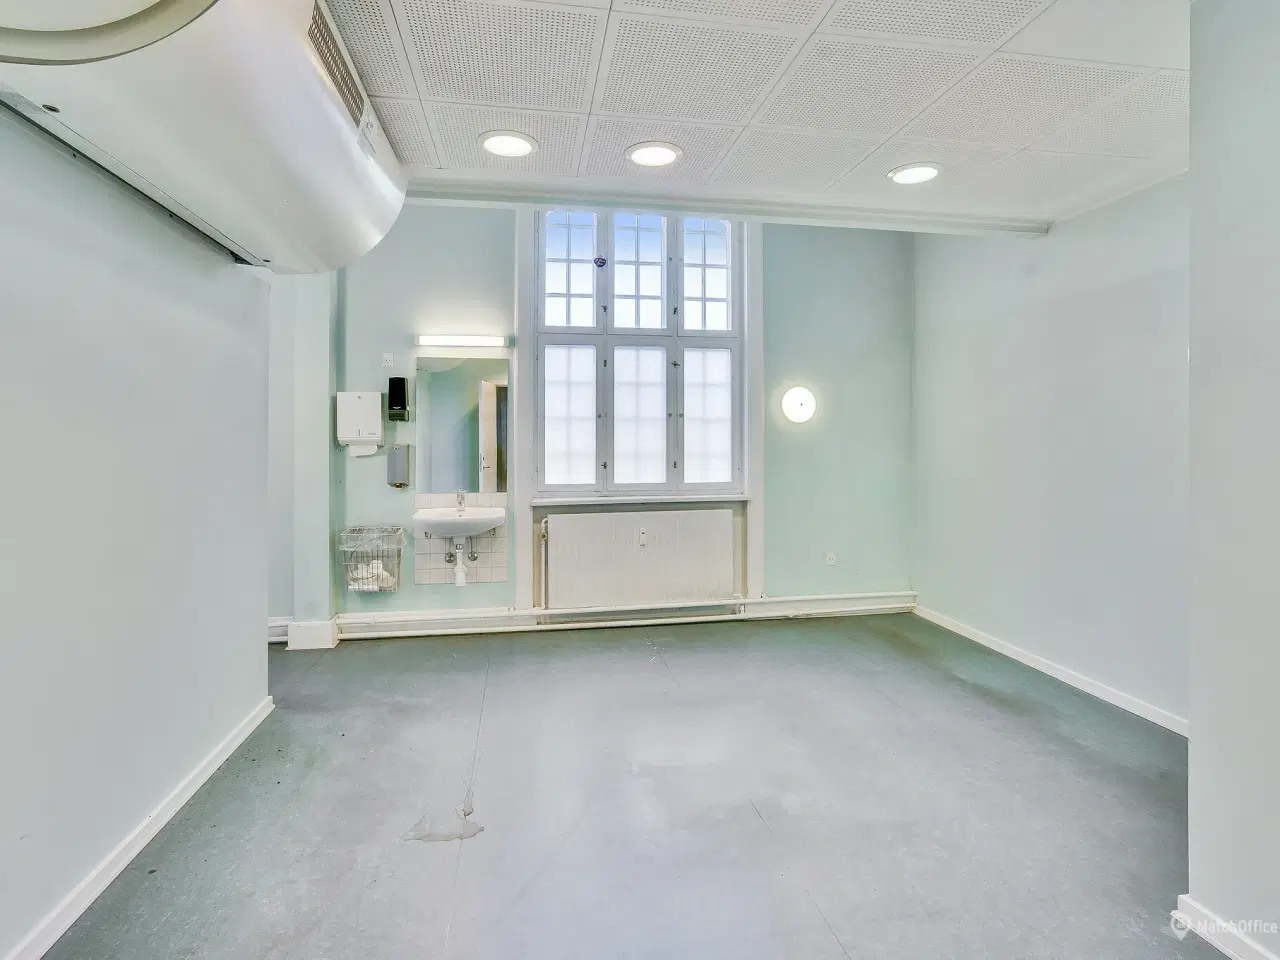 Billede 4 - Spændende kontorlokaler ved Indkøbscentret BROEN, i Esbjerg.